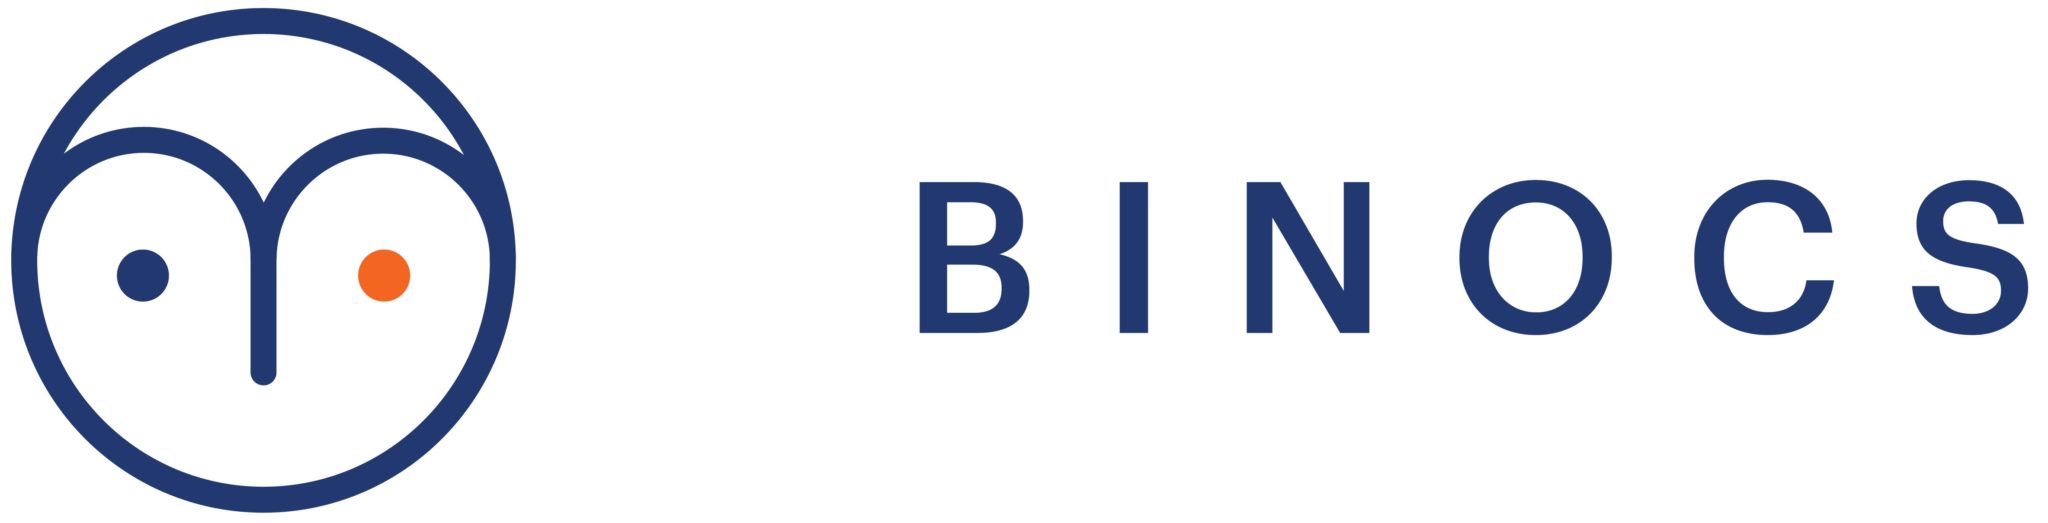 Binocs logo